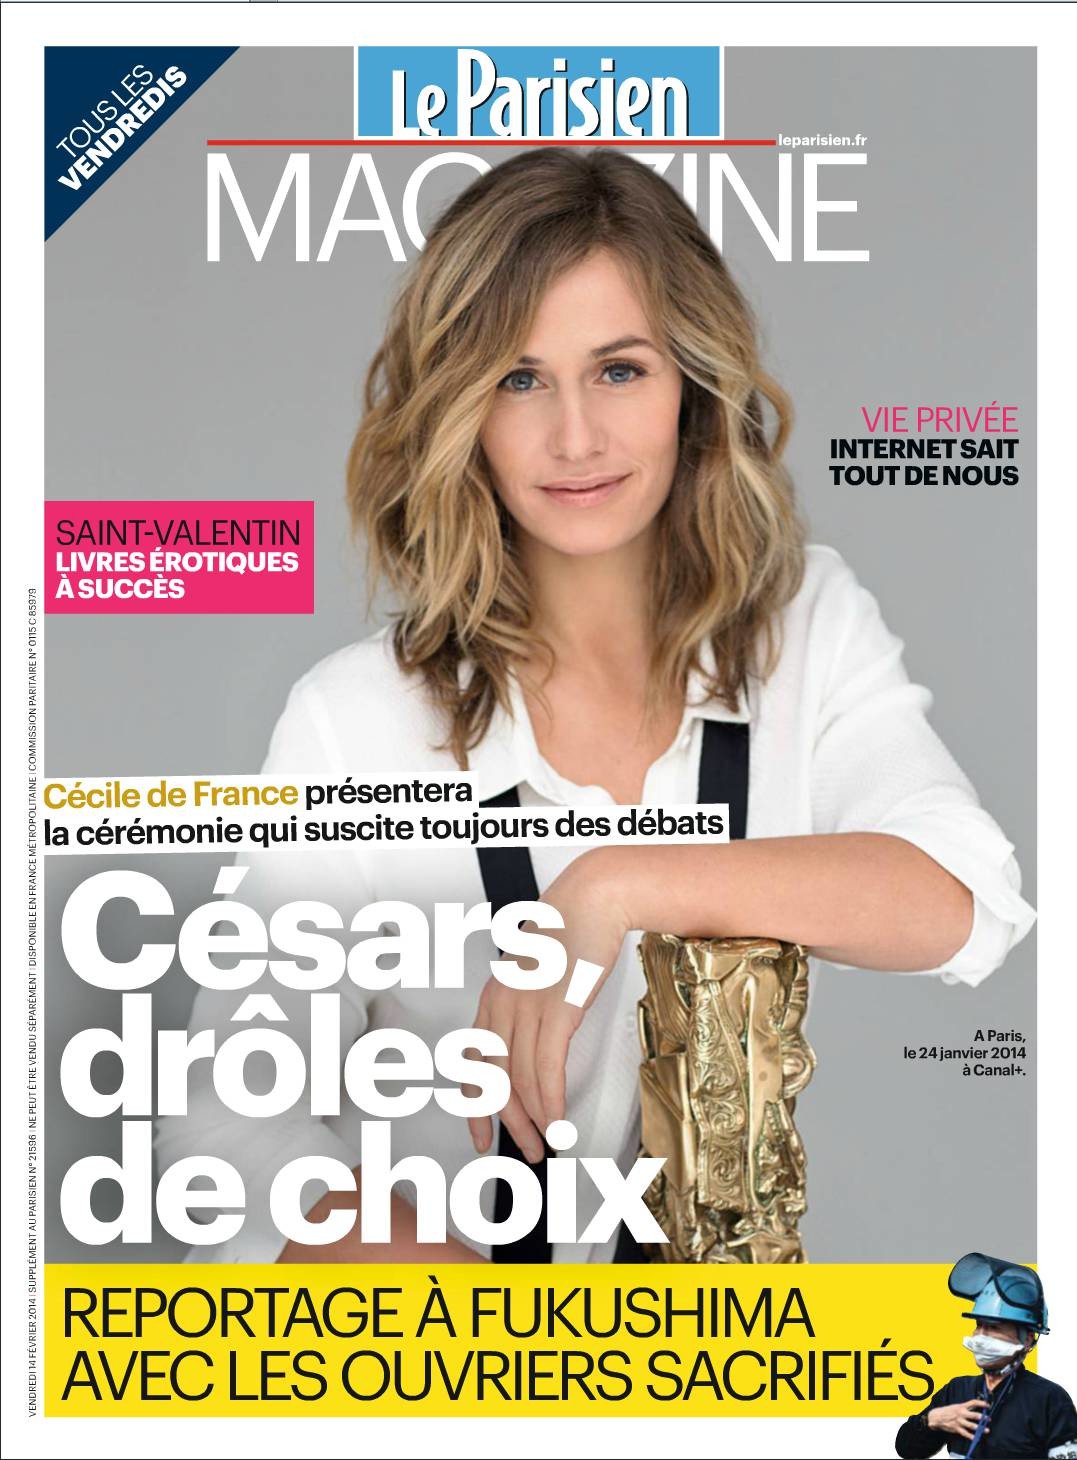 Cecile de France - parisien mag 2014.jpeg